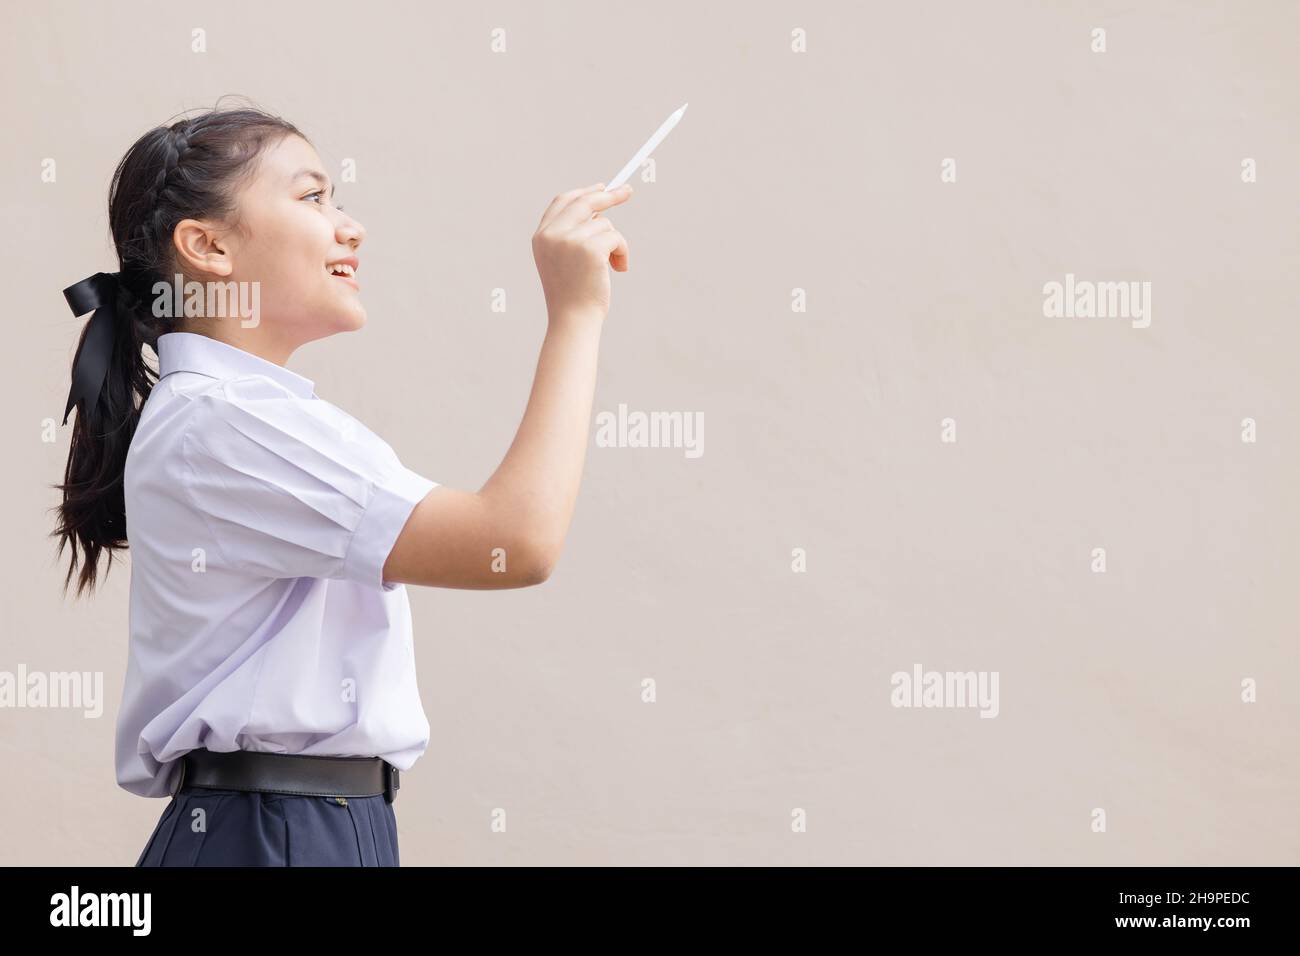 Jeune étudiant asiatique dans l'école uniforme fille adolescent dessin main apporter imagination nouveau concept d'idée. Banque D'Images